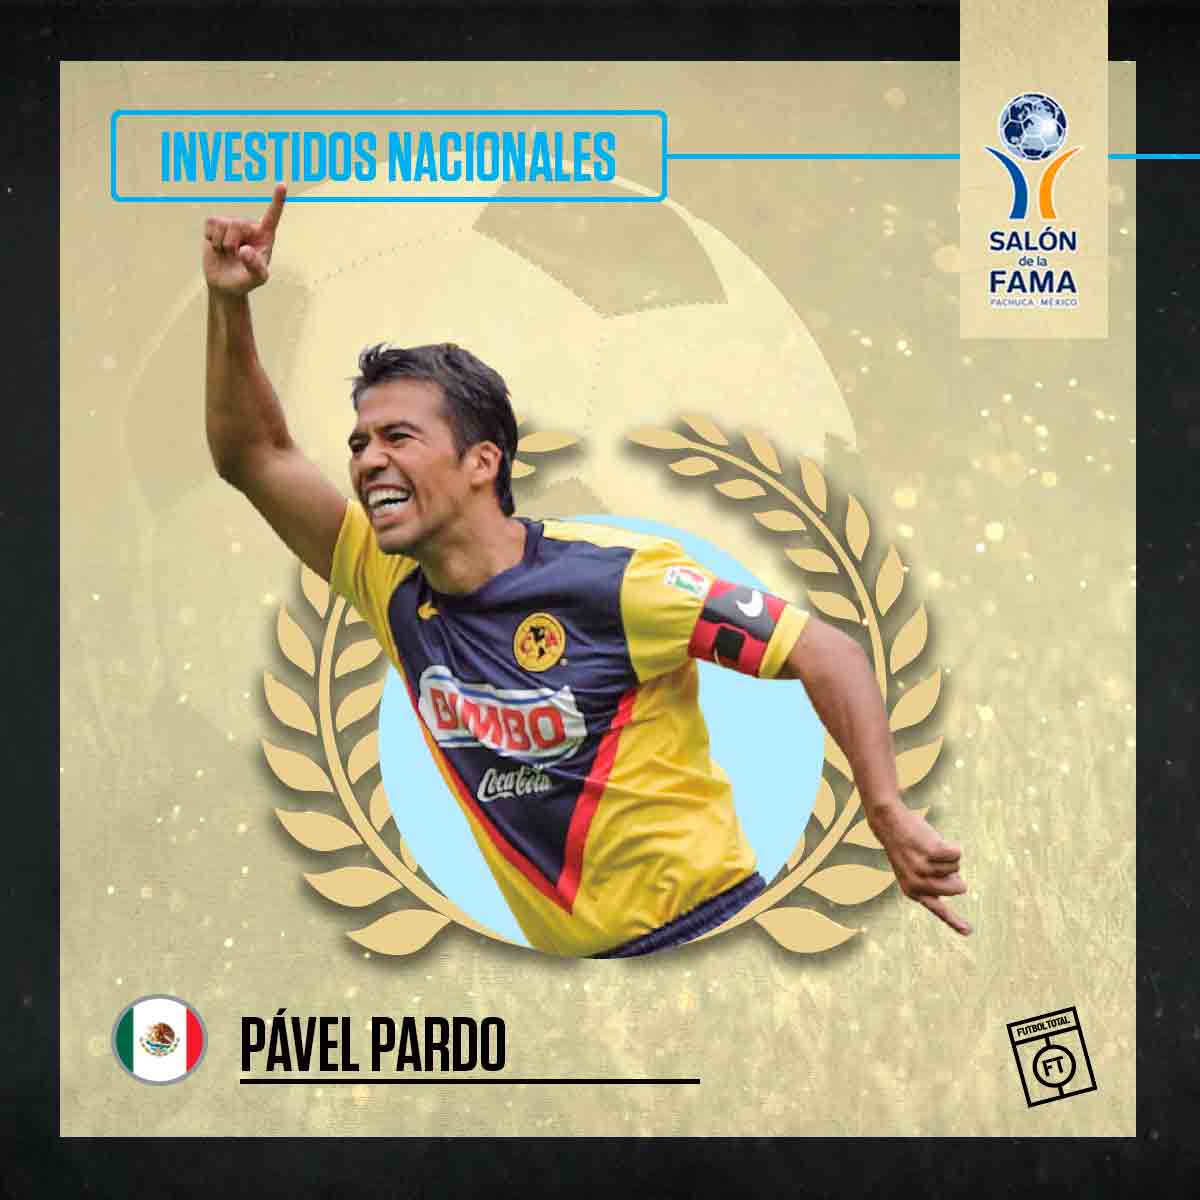 Pavel Pardo